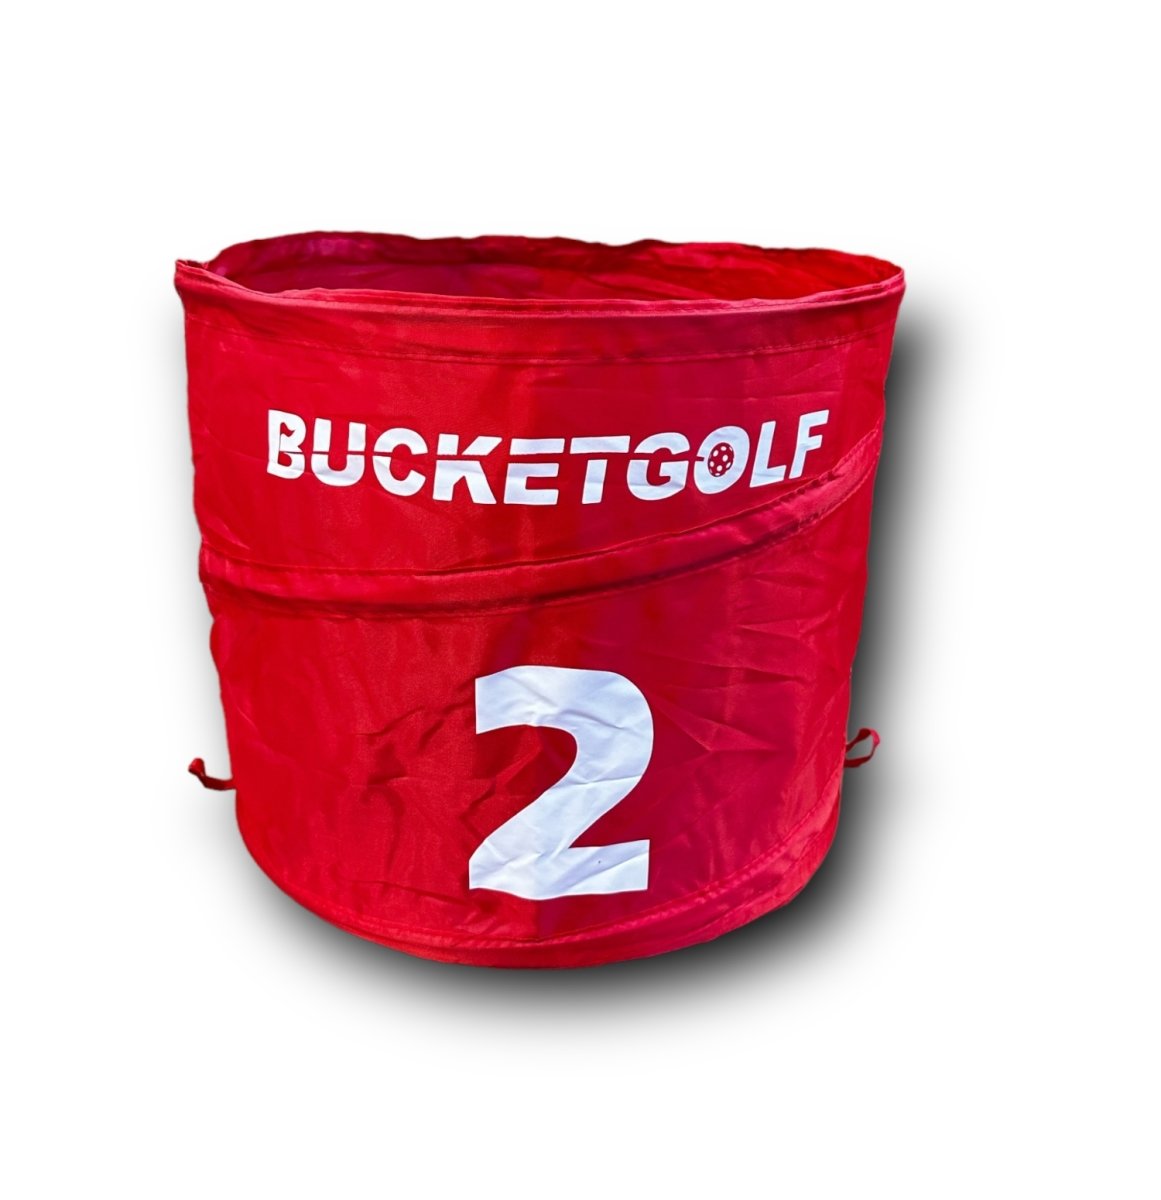 Bucket - Bucket Golf